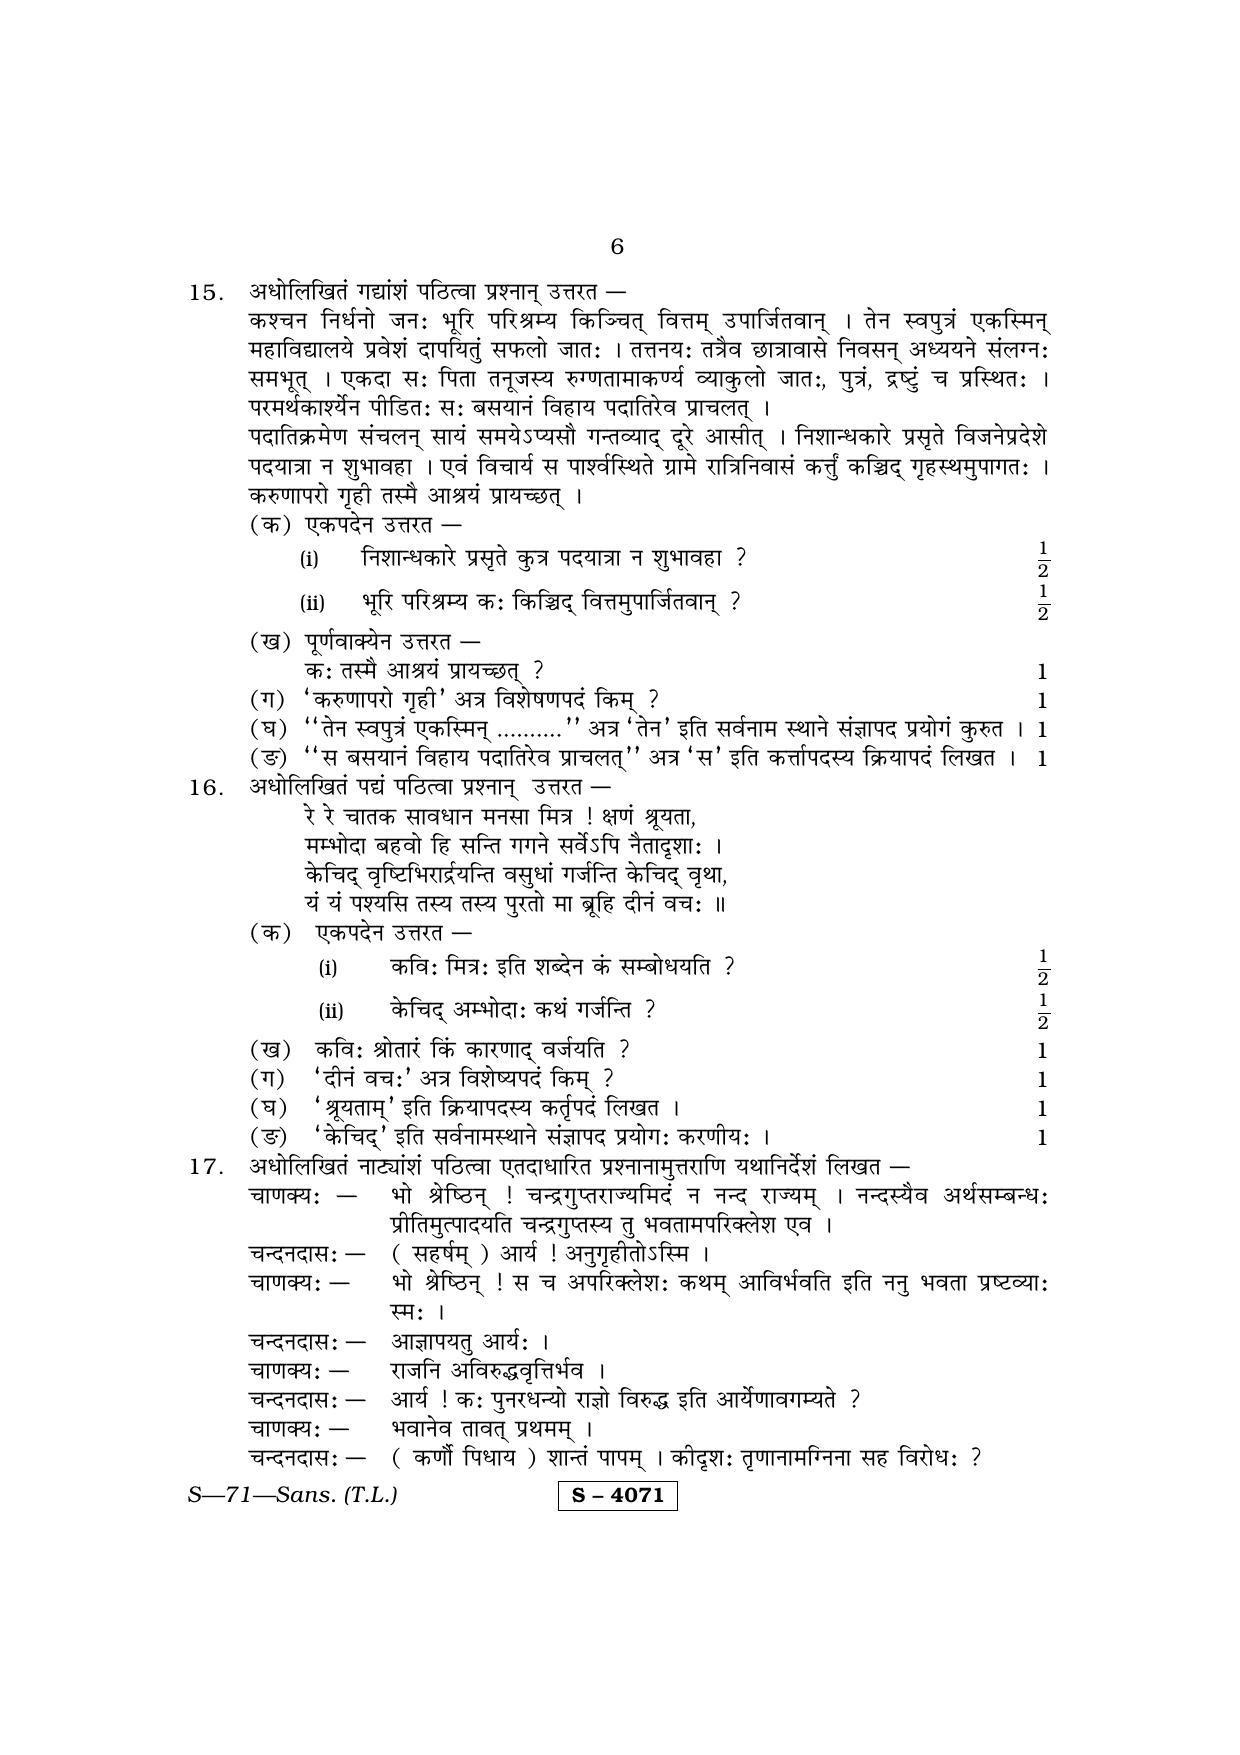 RBSE Class 10 Sanskrit (T.L.) 2015 Question Paper - Page 6